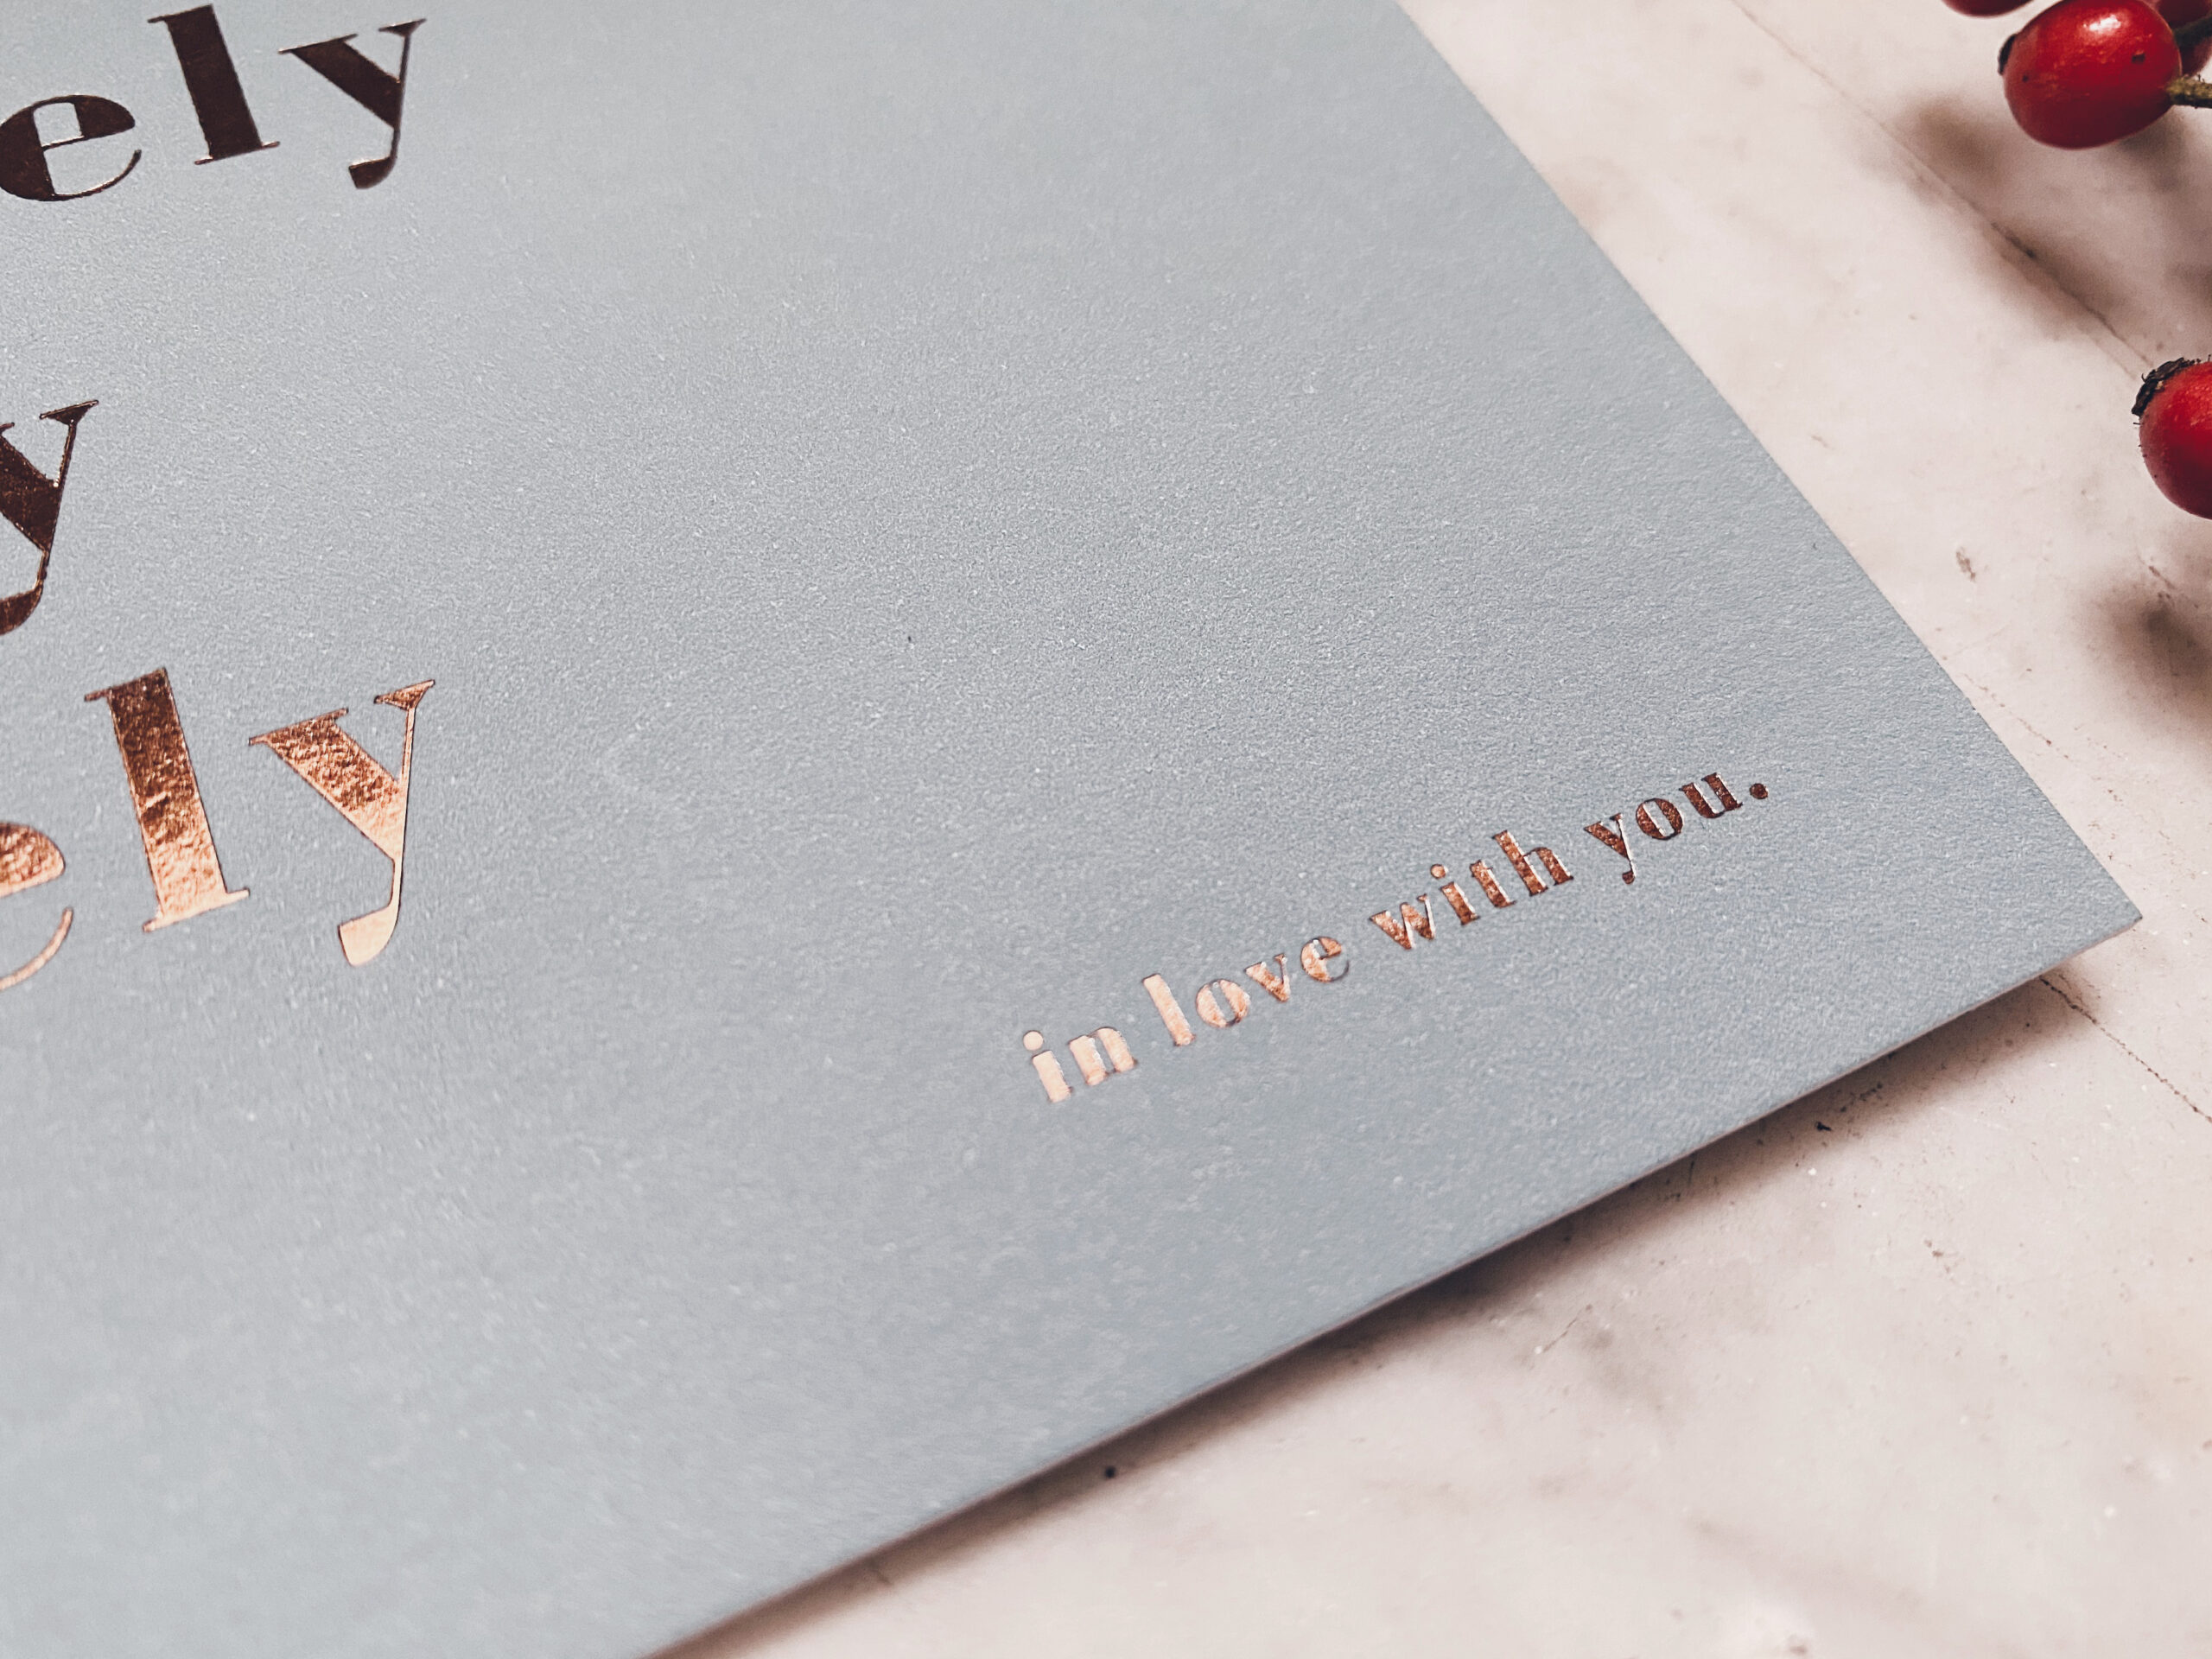 Laura & Jeroen huwelijksuitnodigingen donkerbruine foliedruk bronze koperfolie letterpress foliedruk hotfoil studio Mustique grafisch ontwerp